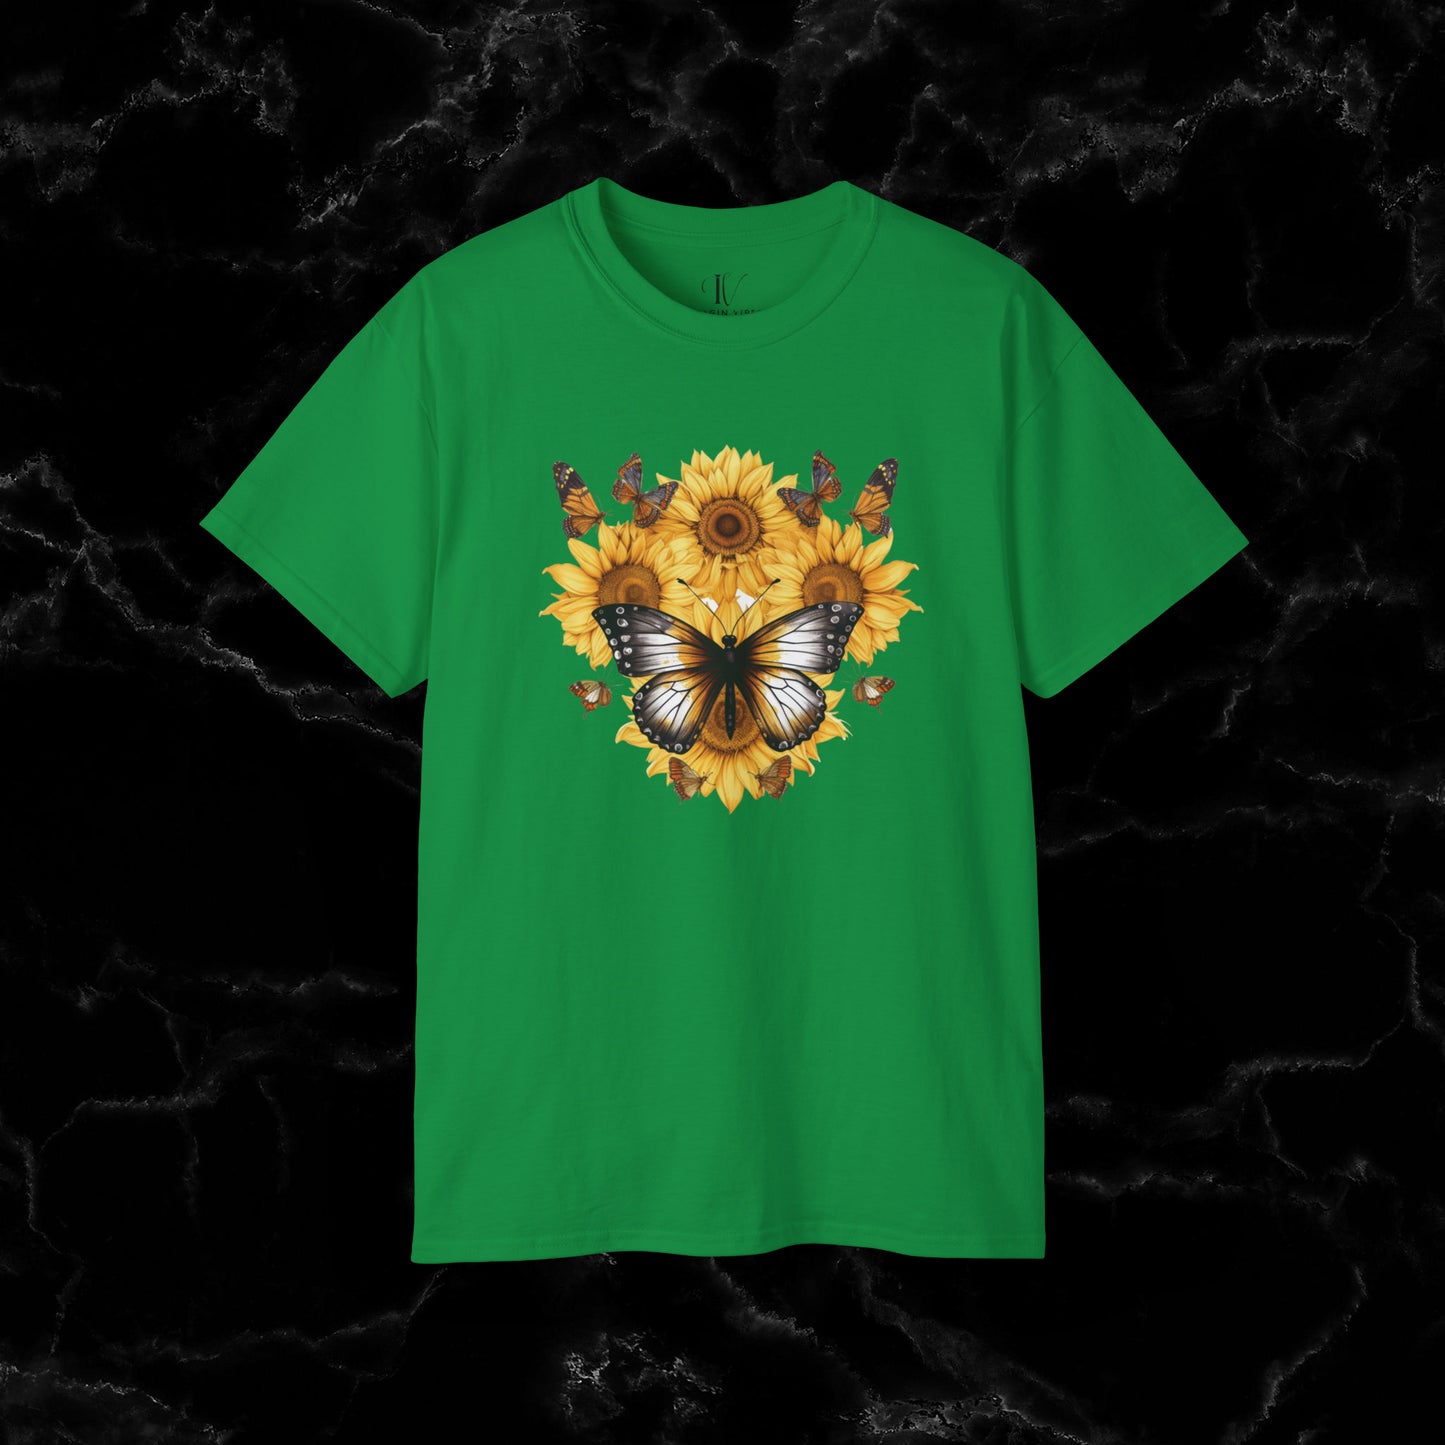 Sunflower Shirt - A Floral Tee, Garden Shirt, and Women's Fall Shirt with Nature-Inspired Design T-Shirt Irish Green S 